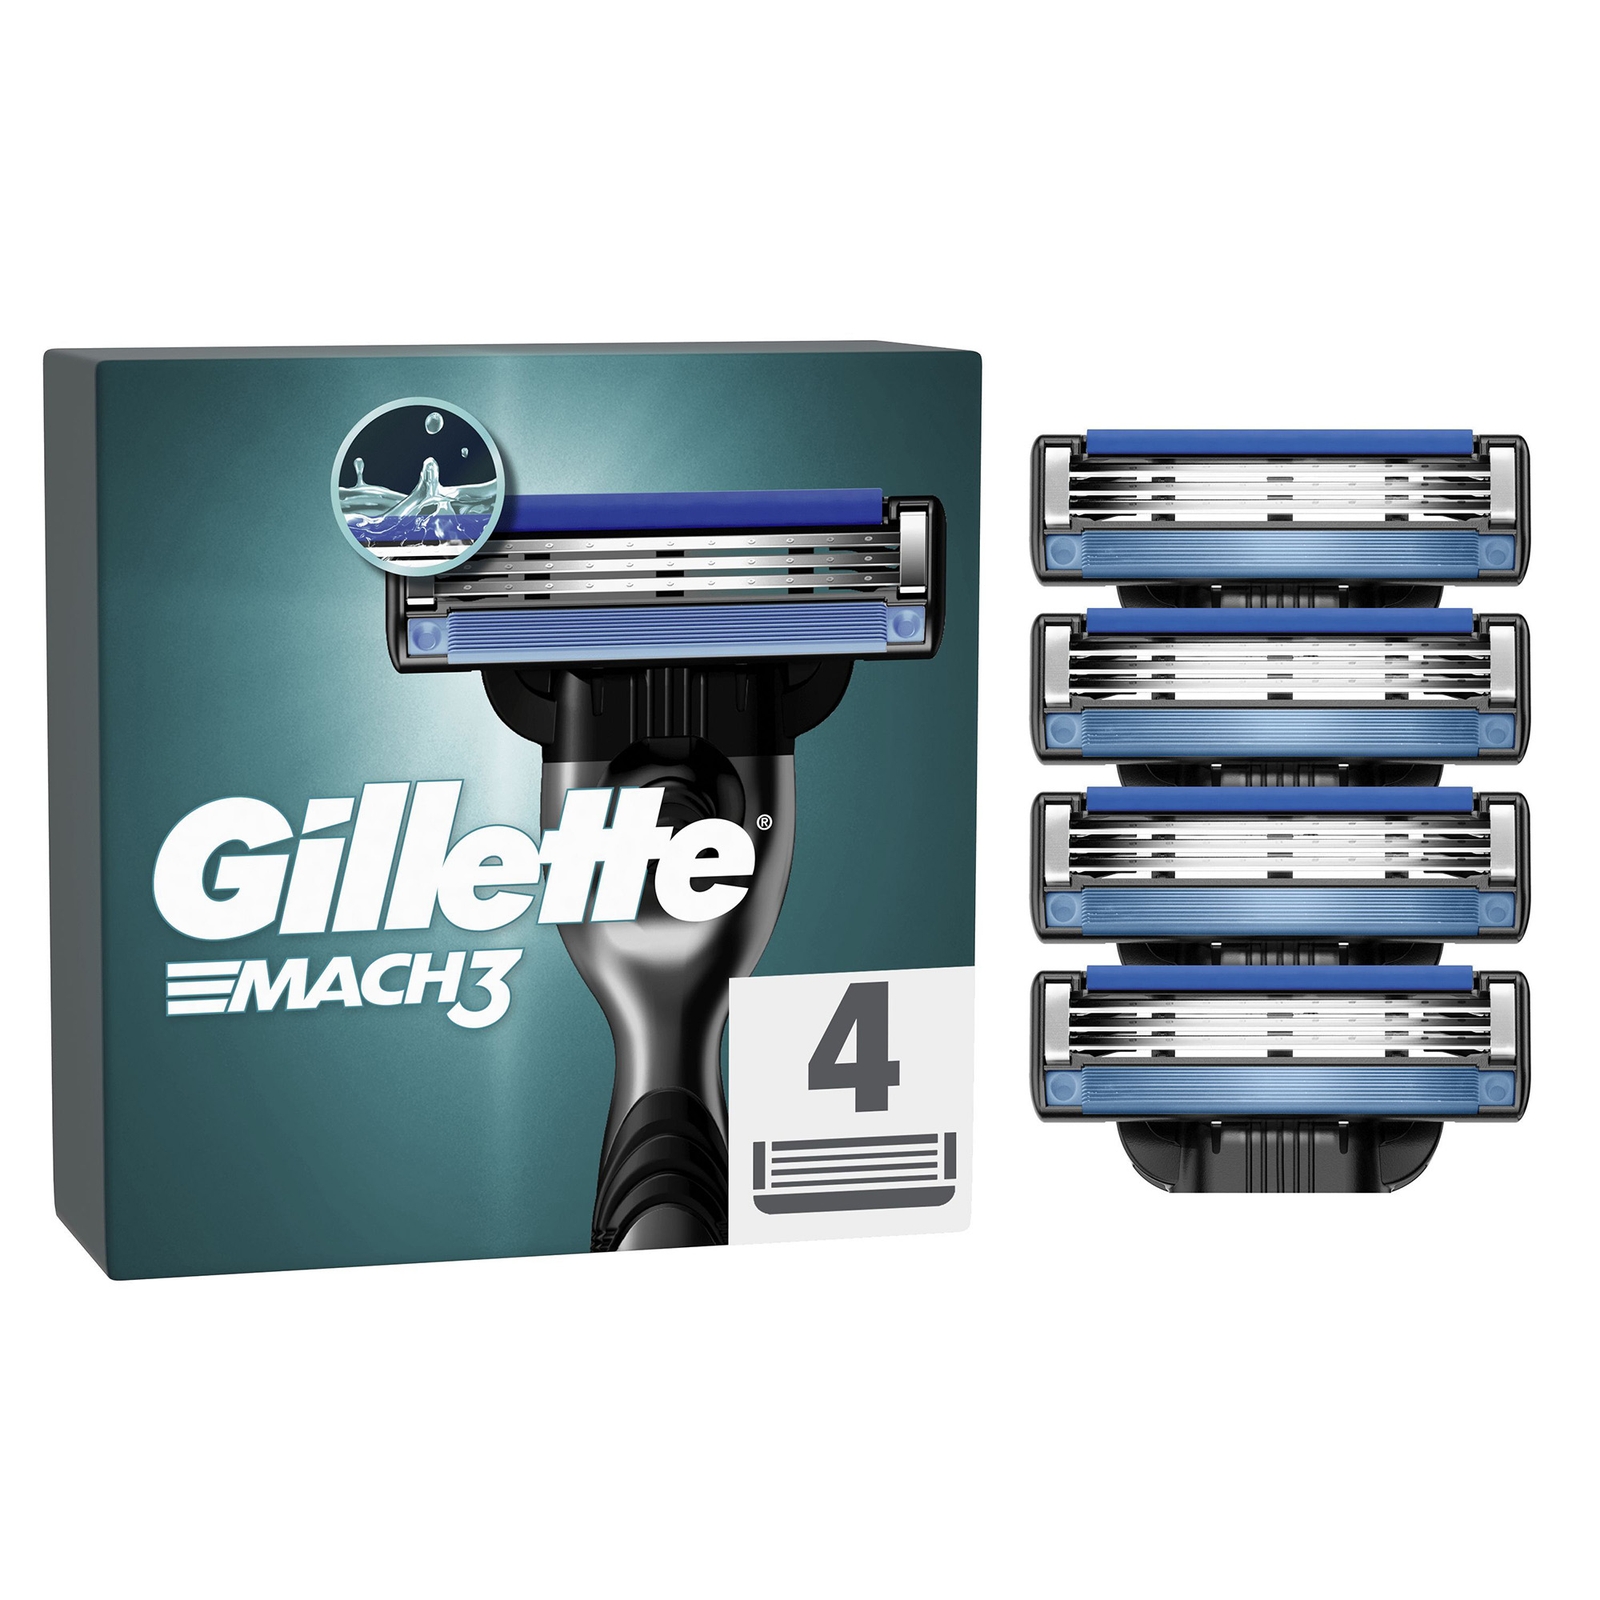 Gillette Mach3 Razor Blades - 4 Pack